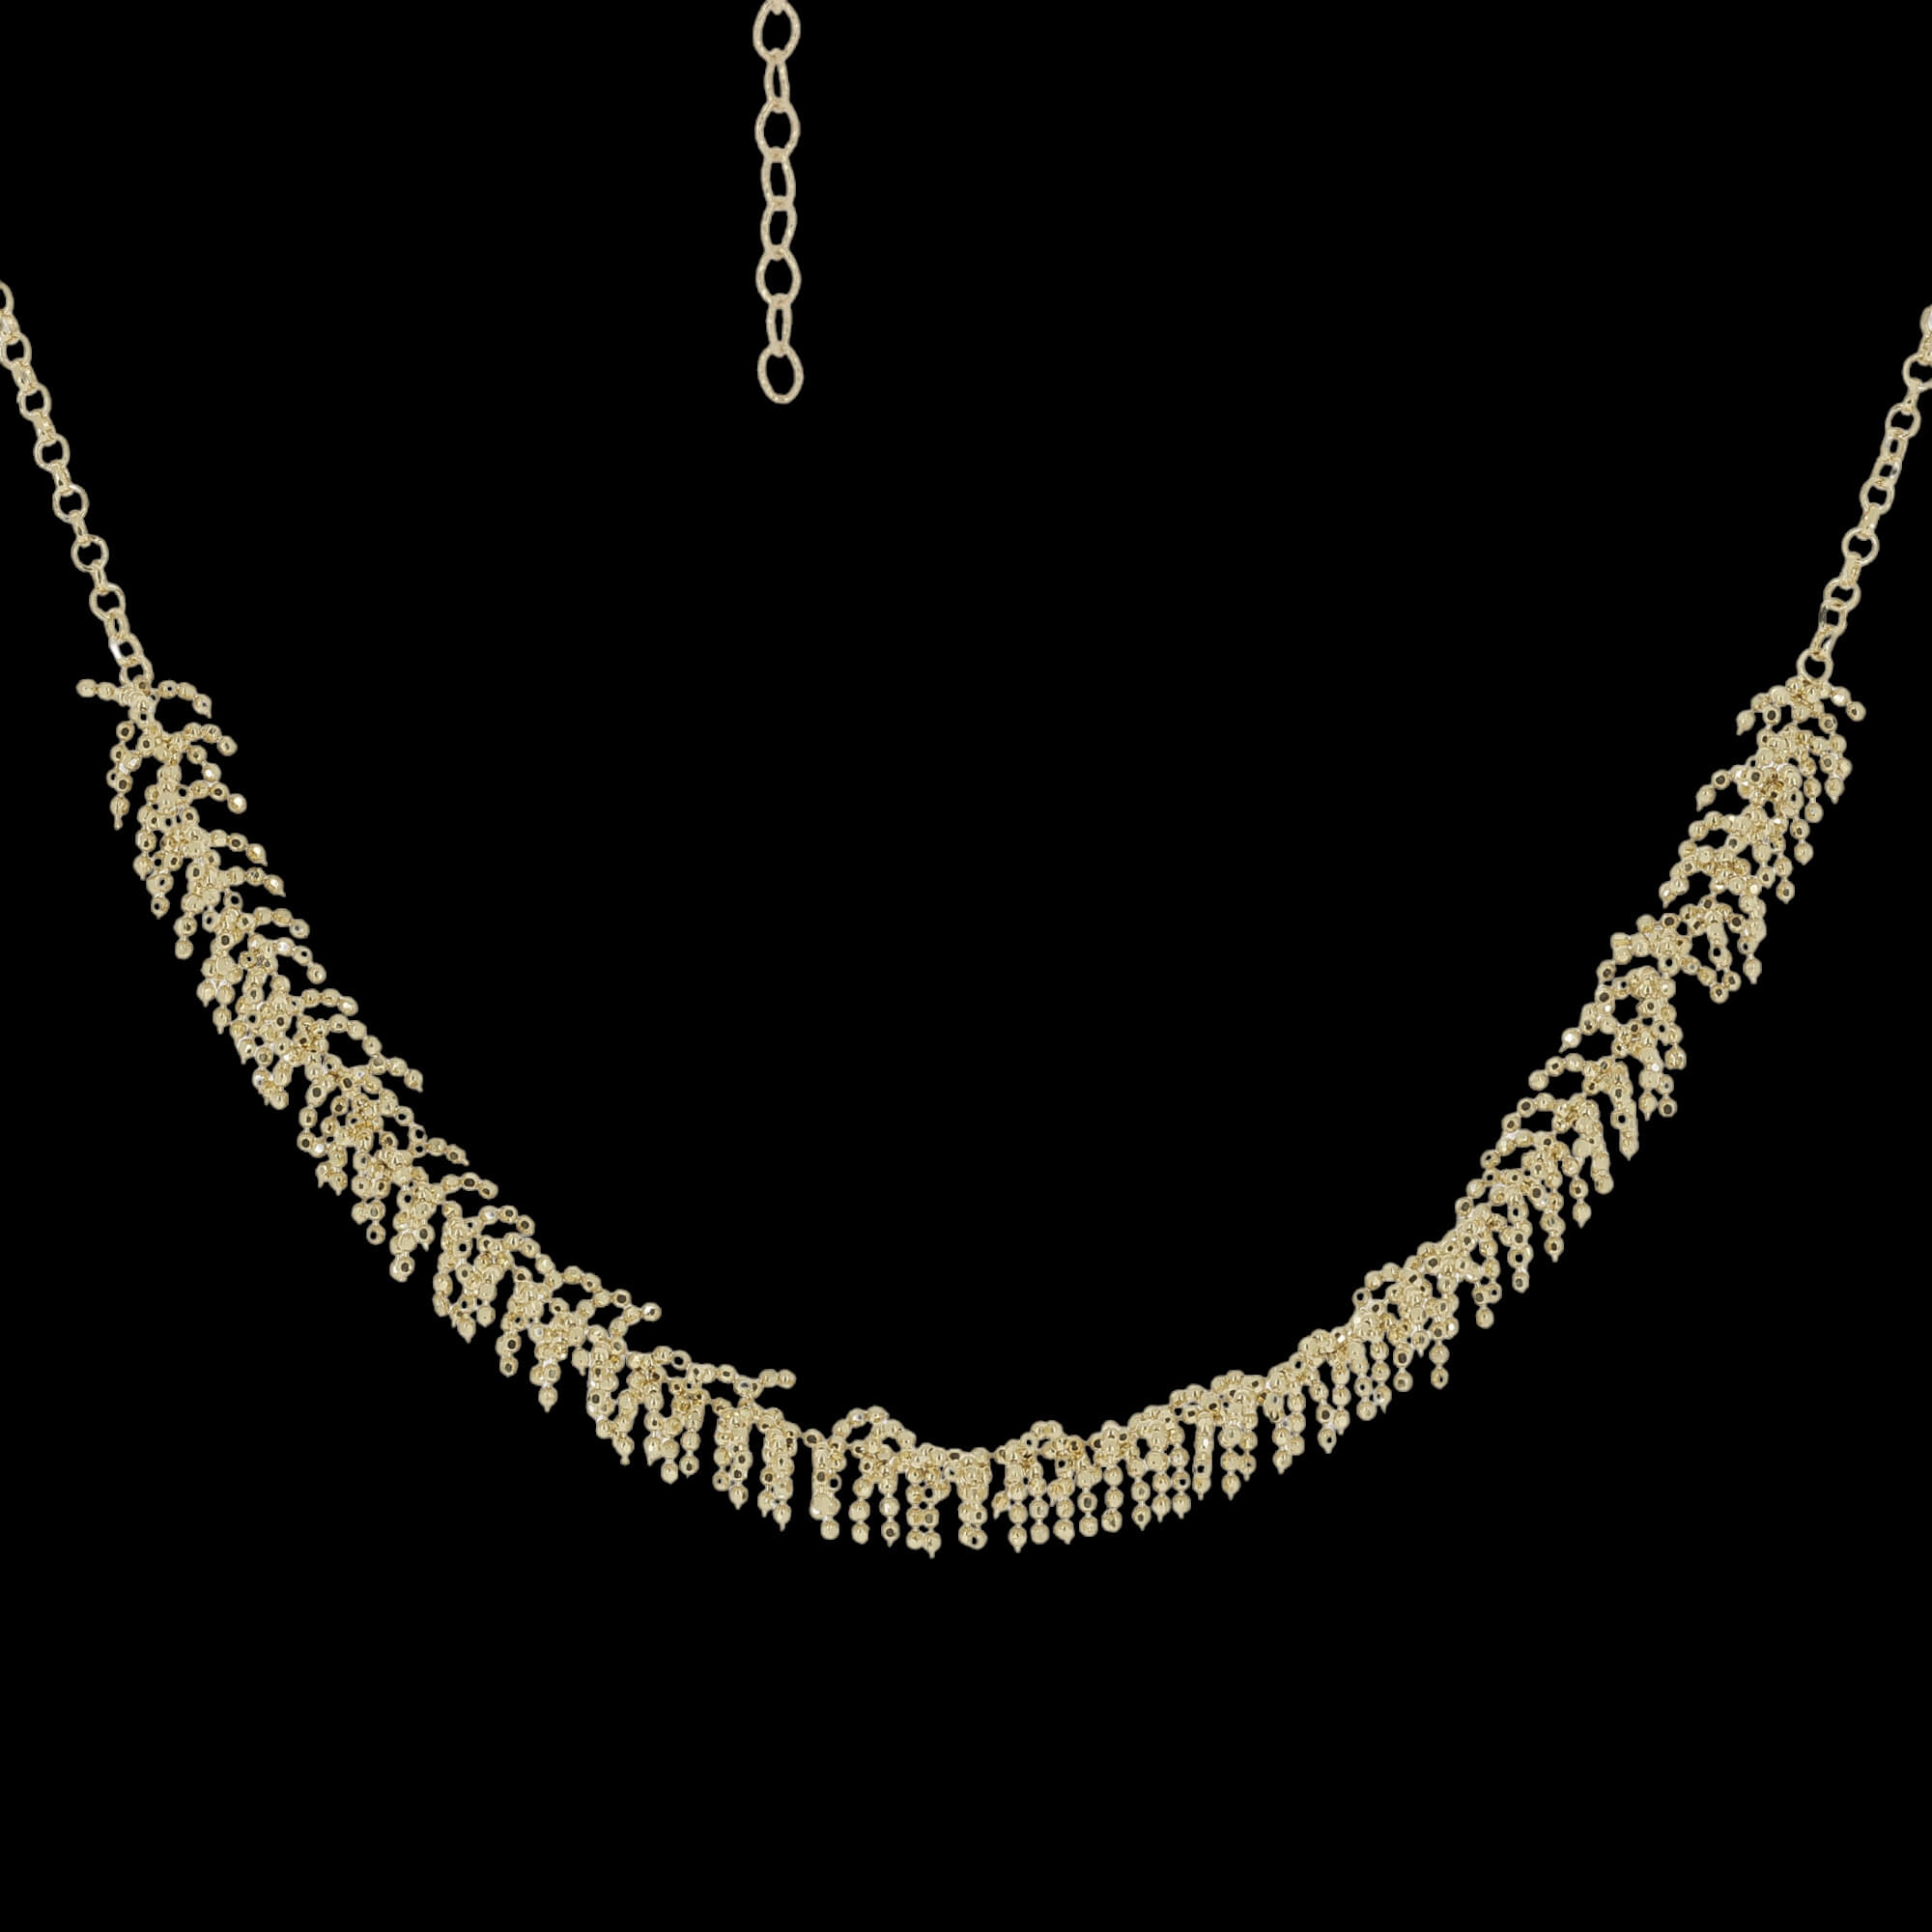 Collier rond chic avec branches raffinées en or 18 carats